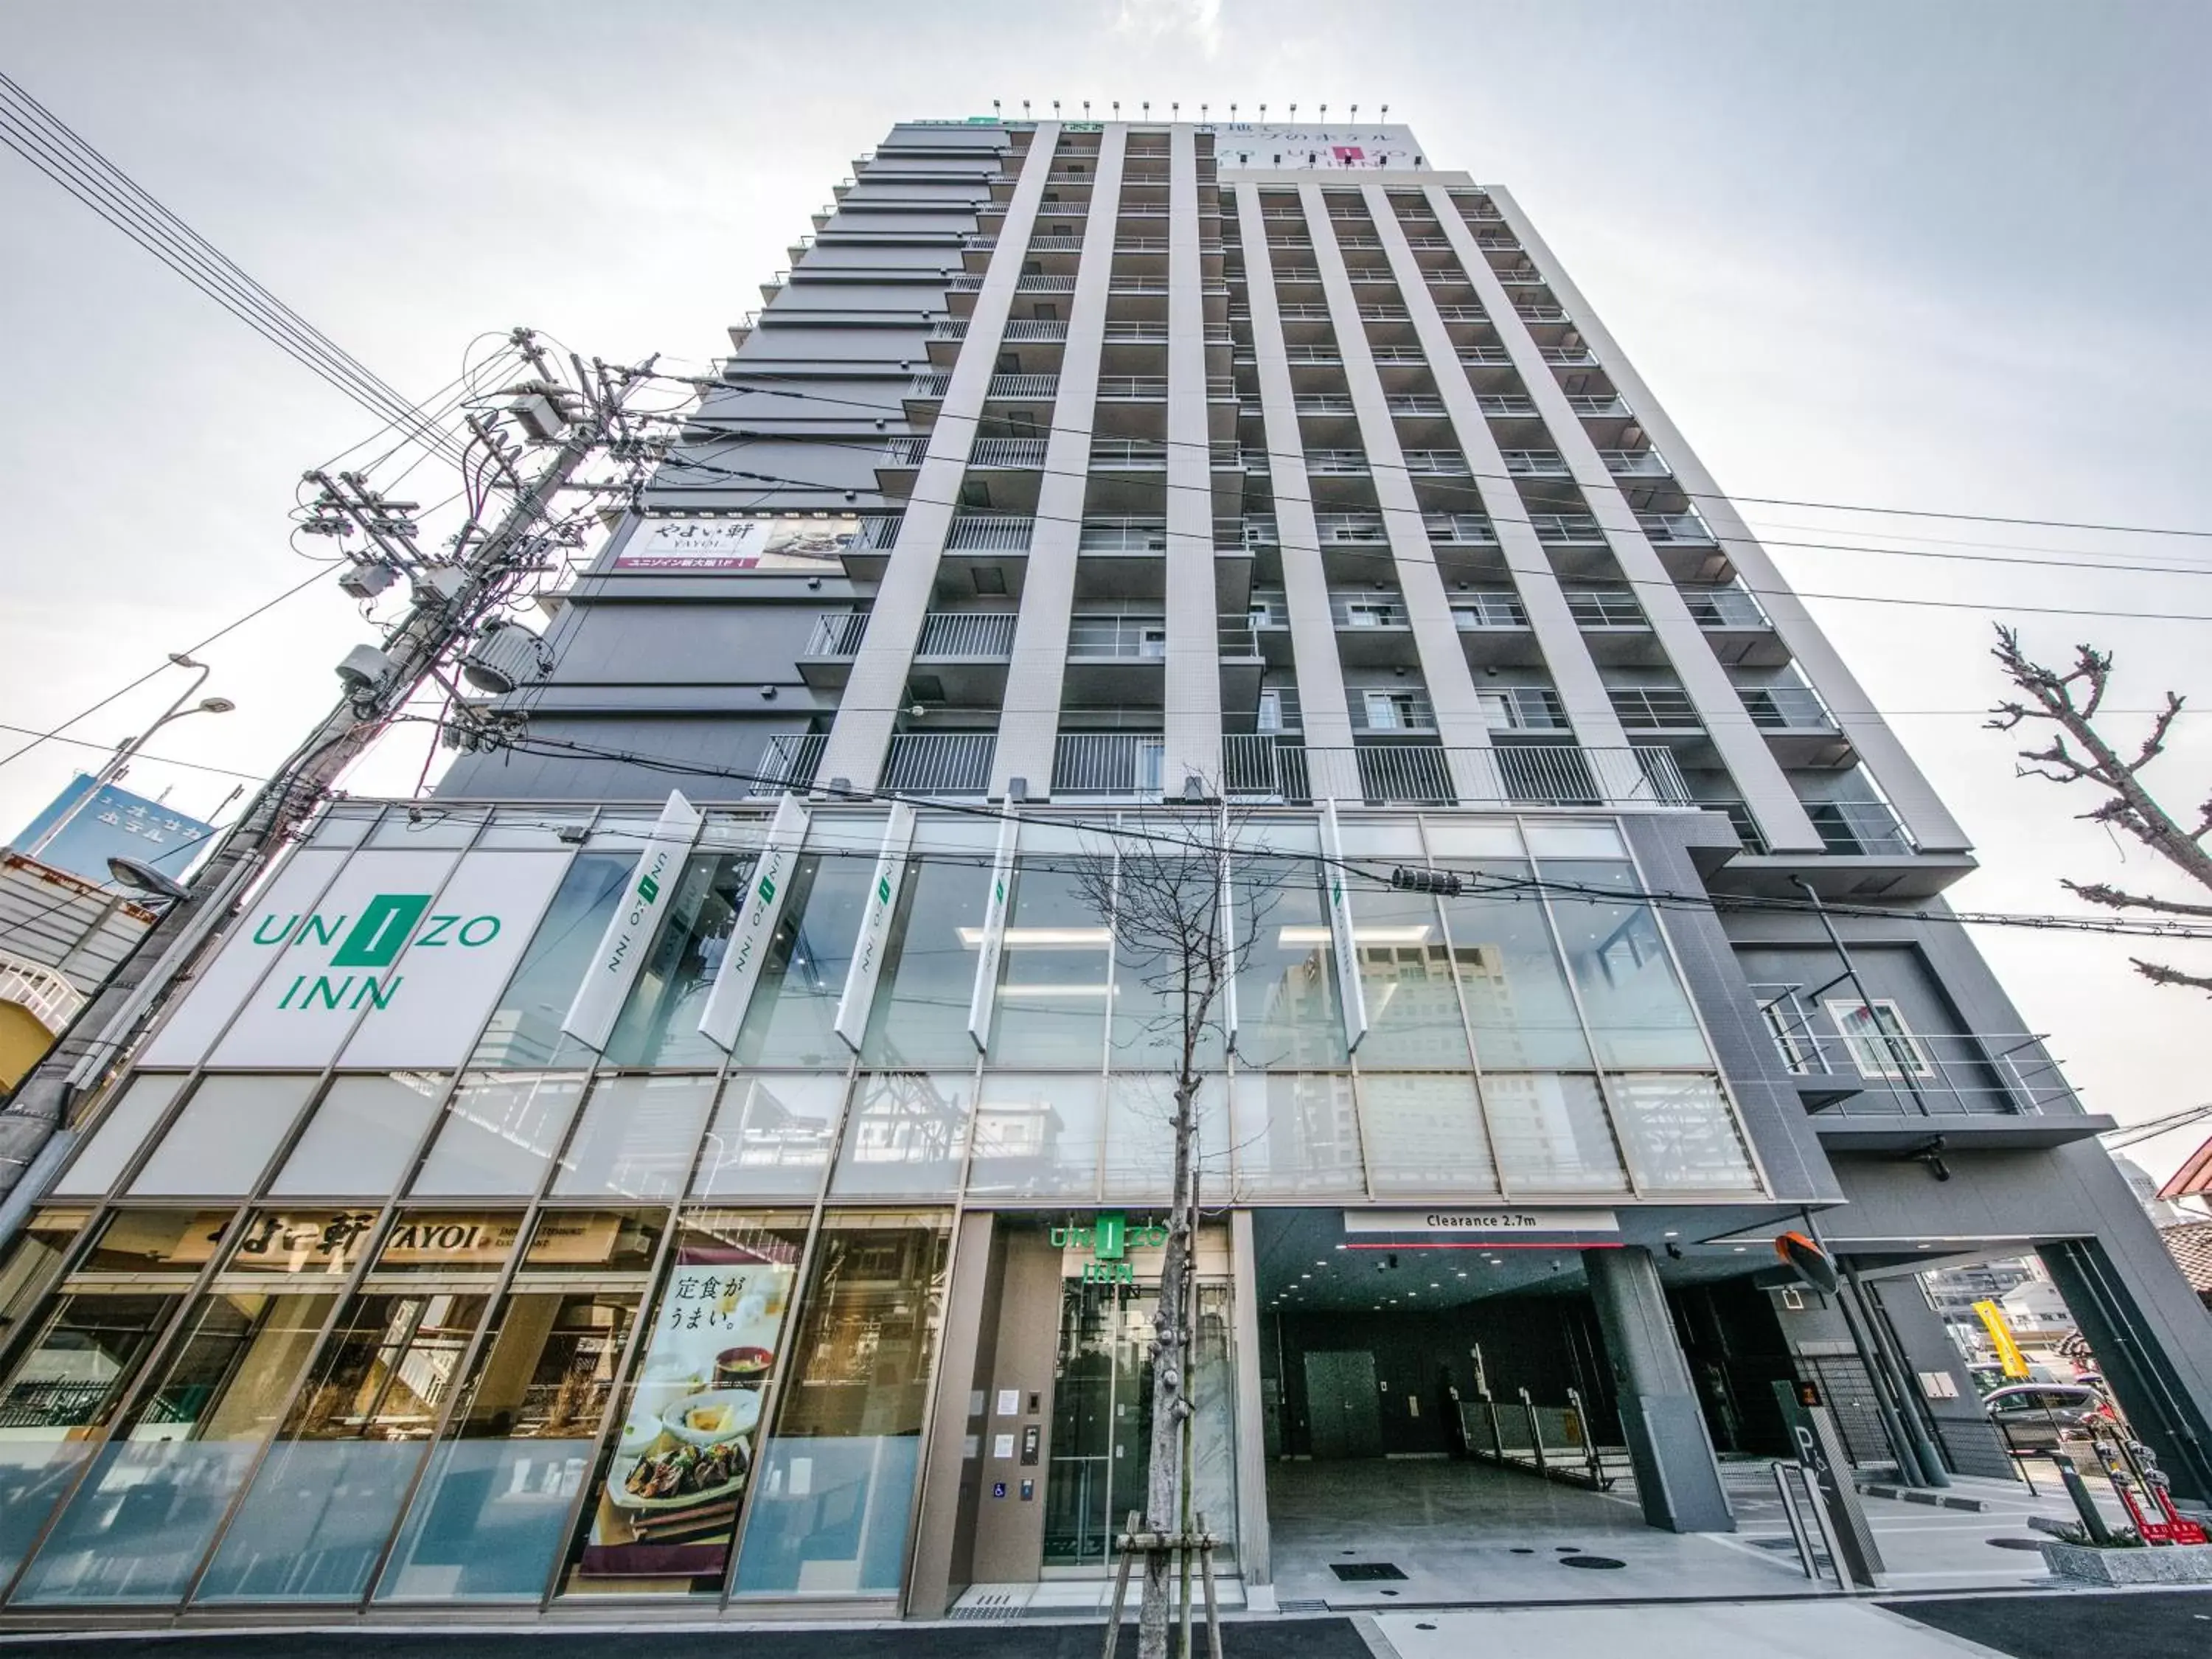 Facade/entrance, Property Building in UNIZO INN Shin-Osaka